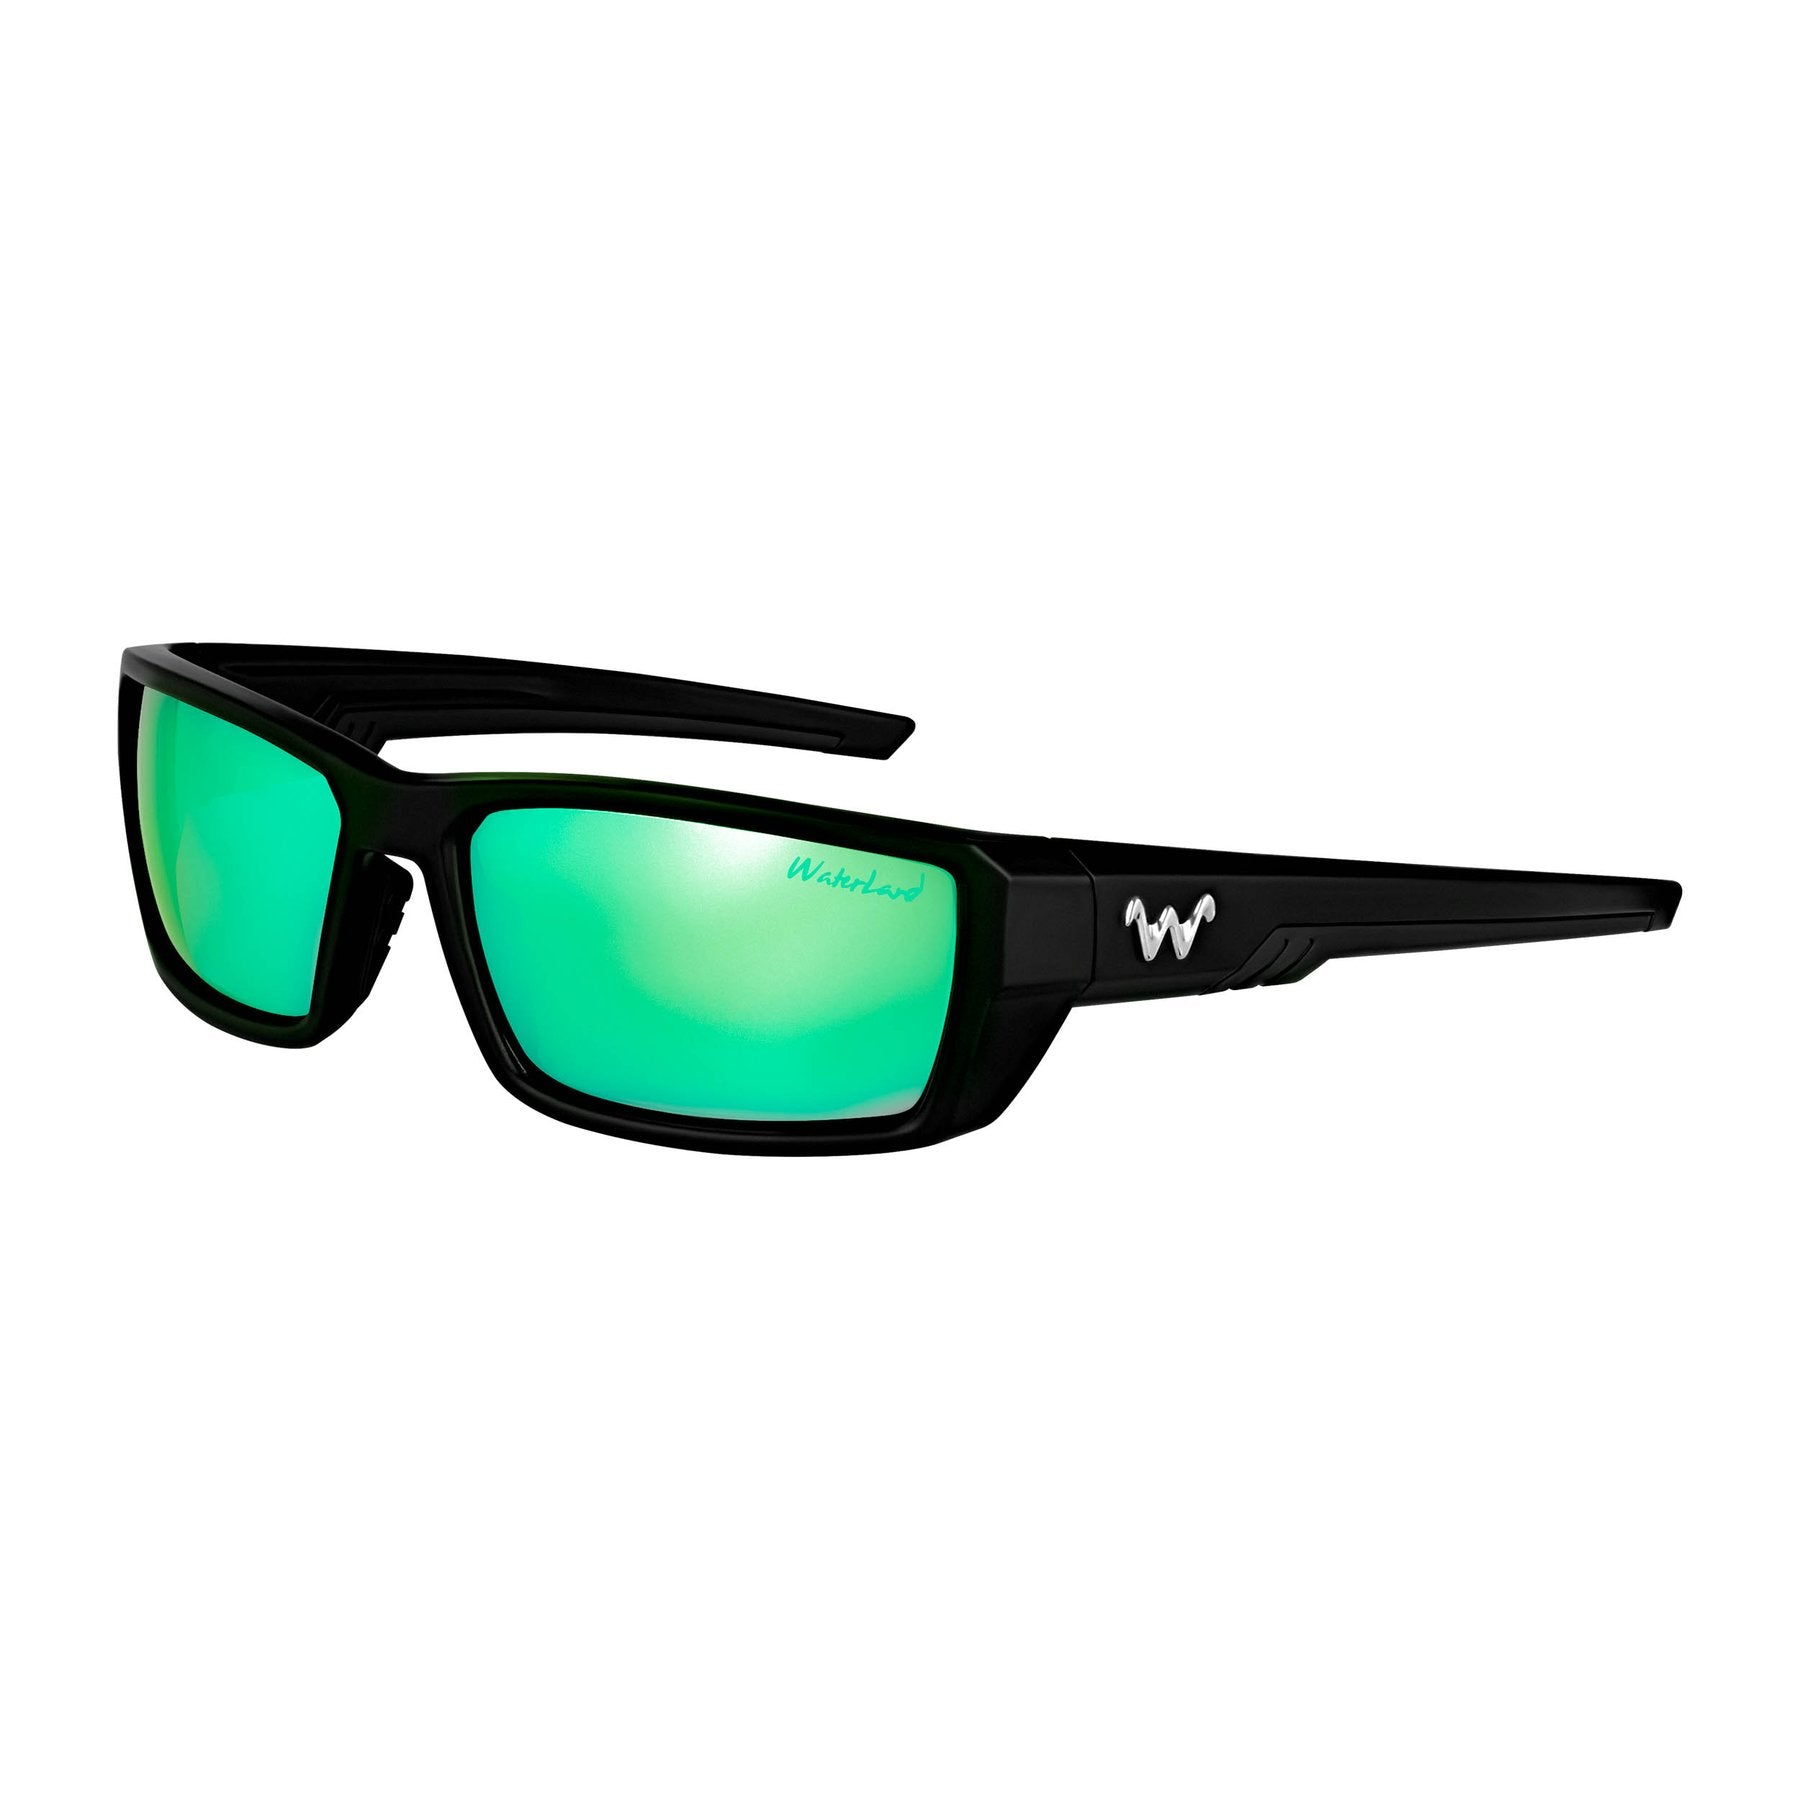 WaterLand Polarized Sunglasses - Laydown Prescription Series